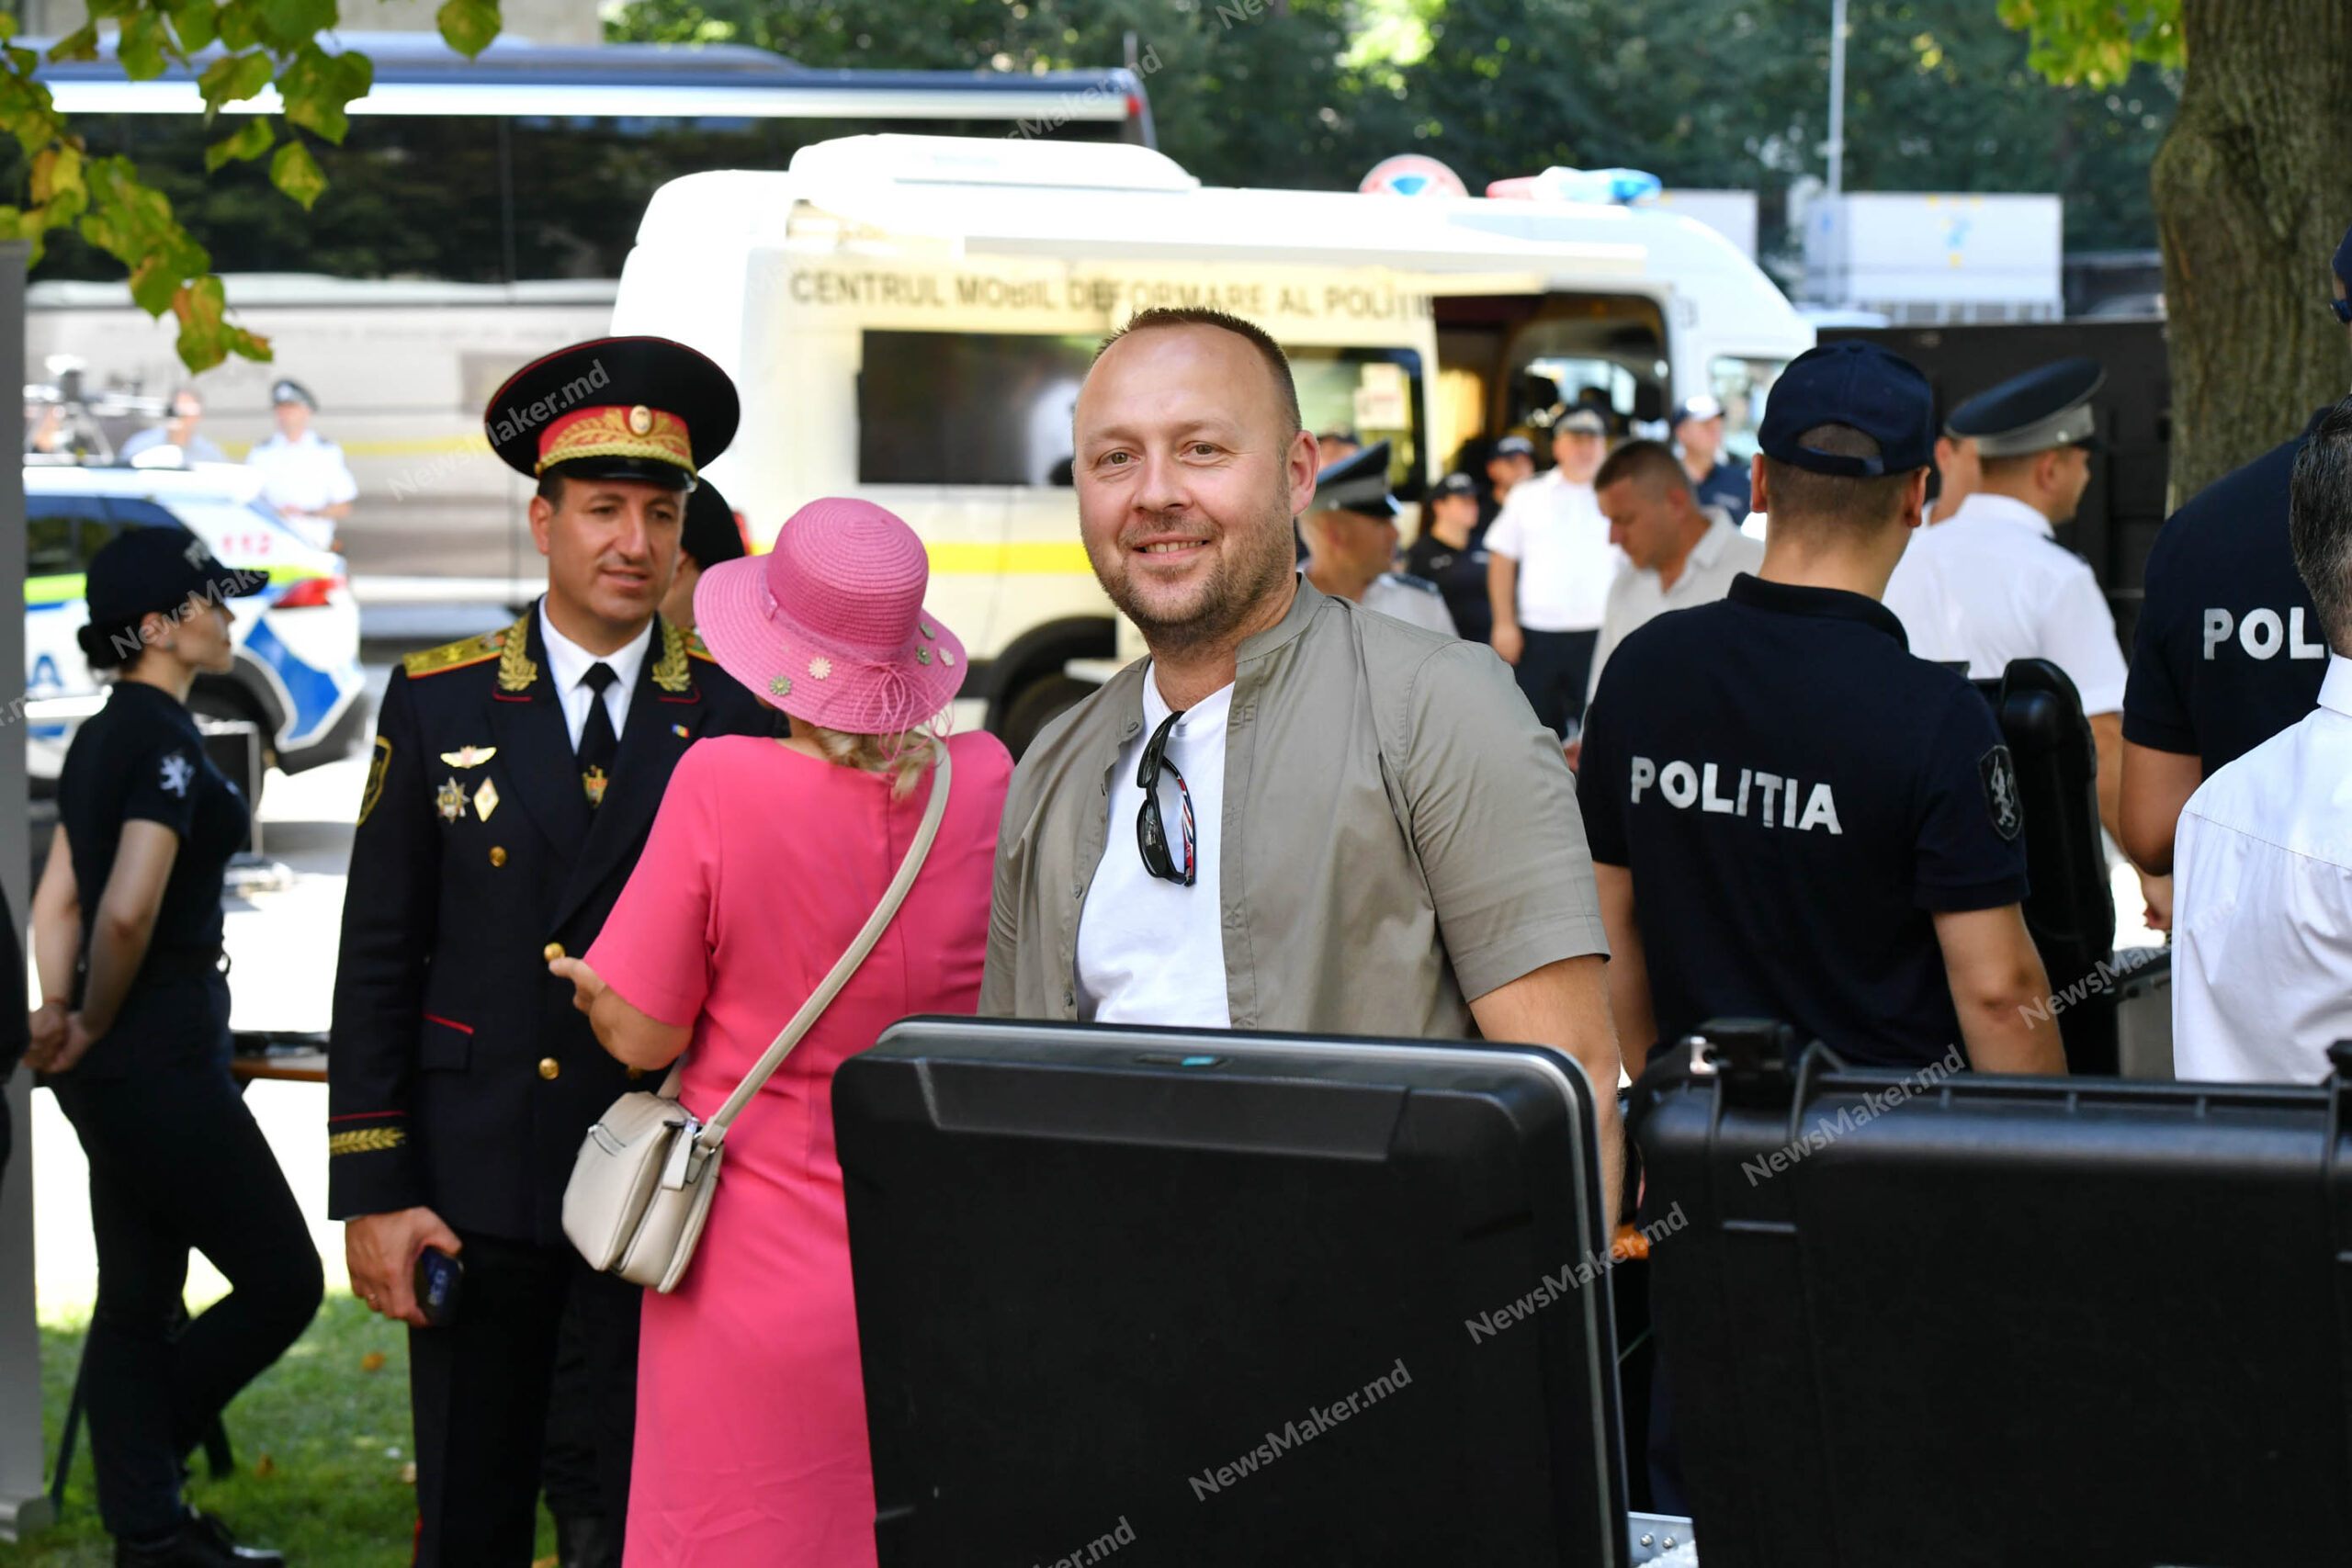 (ФОТО, ВИДЕО) В День независимости Молдовы министры встретились с гражданами и ответили на их вопросы